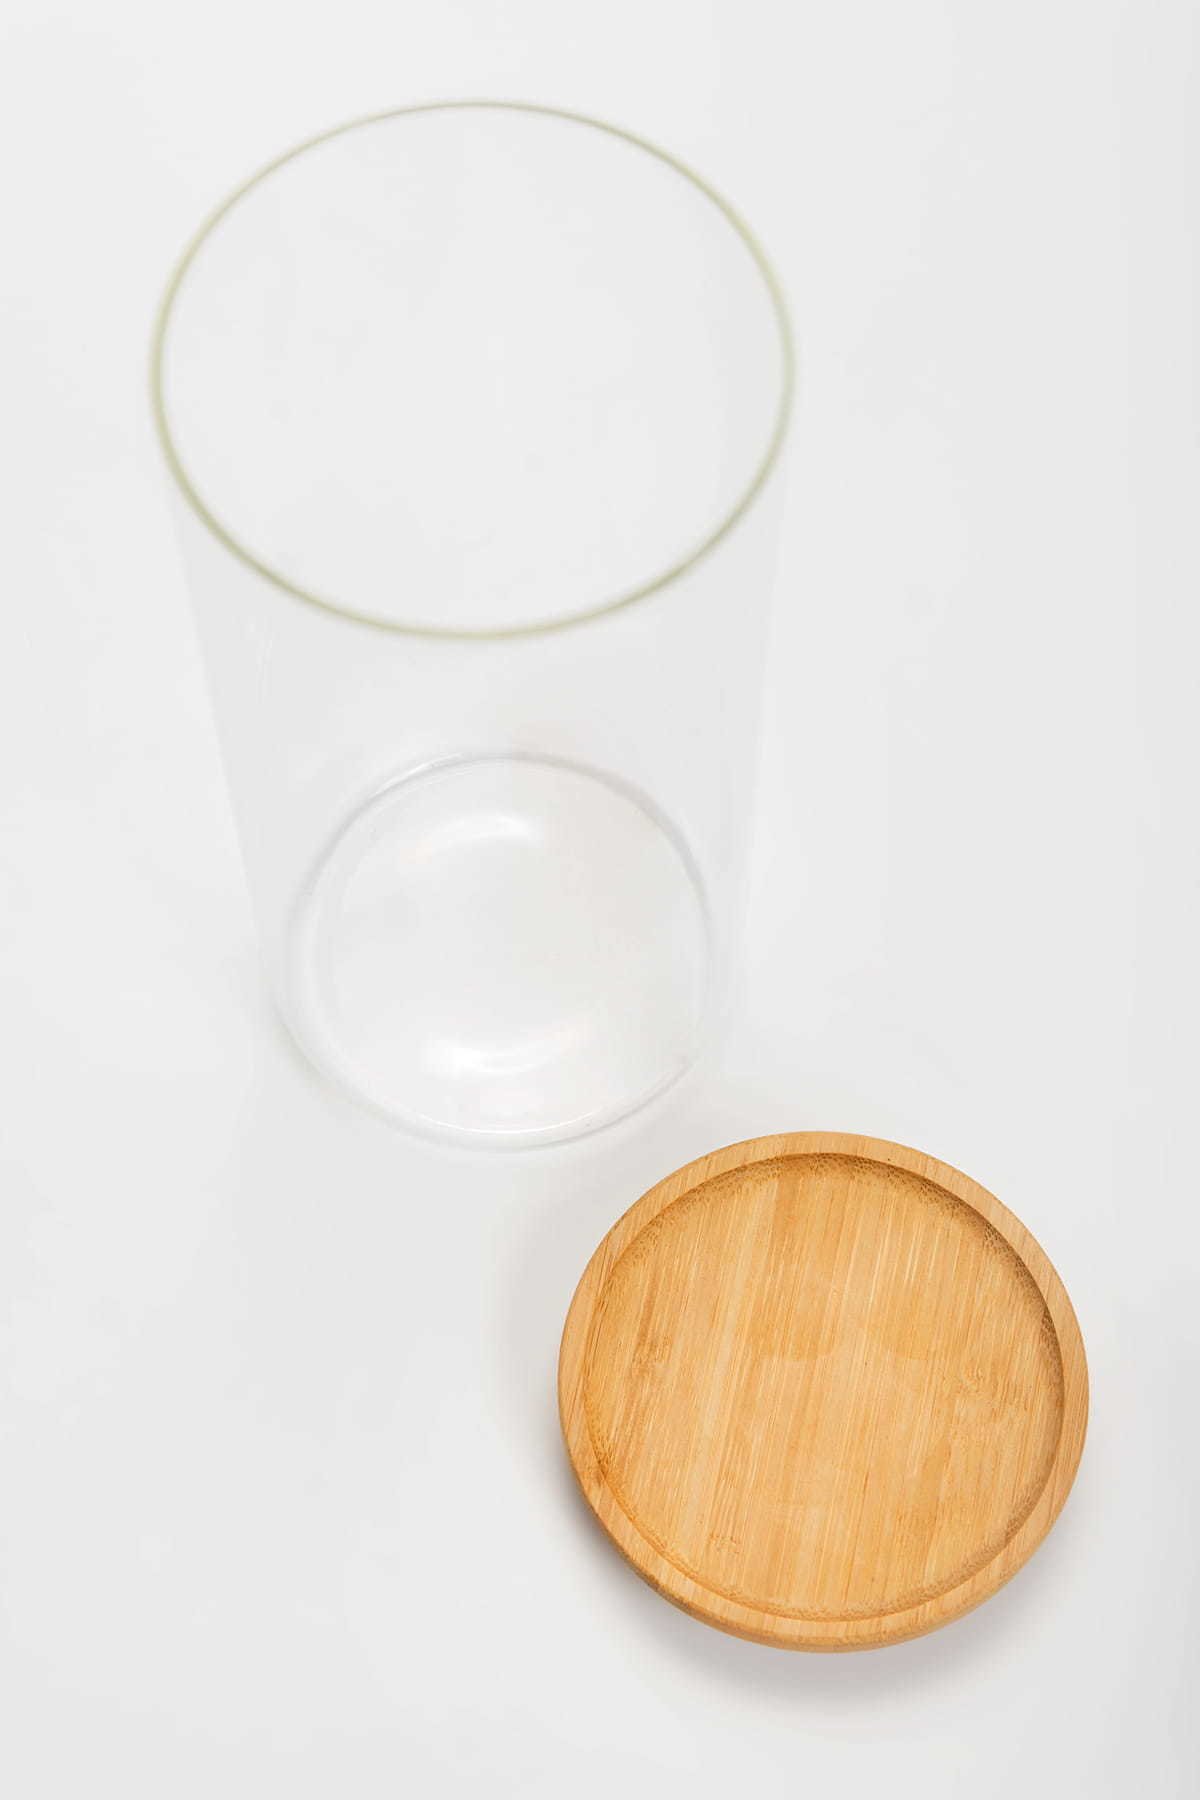 Birių produktų indas MPLco, stiklinis, su bambukiniu dangteliu, 10 x 22 cm - 2